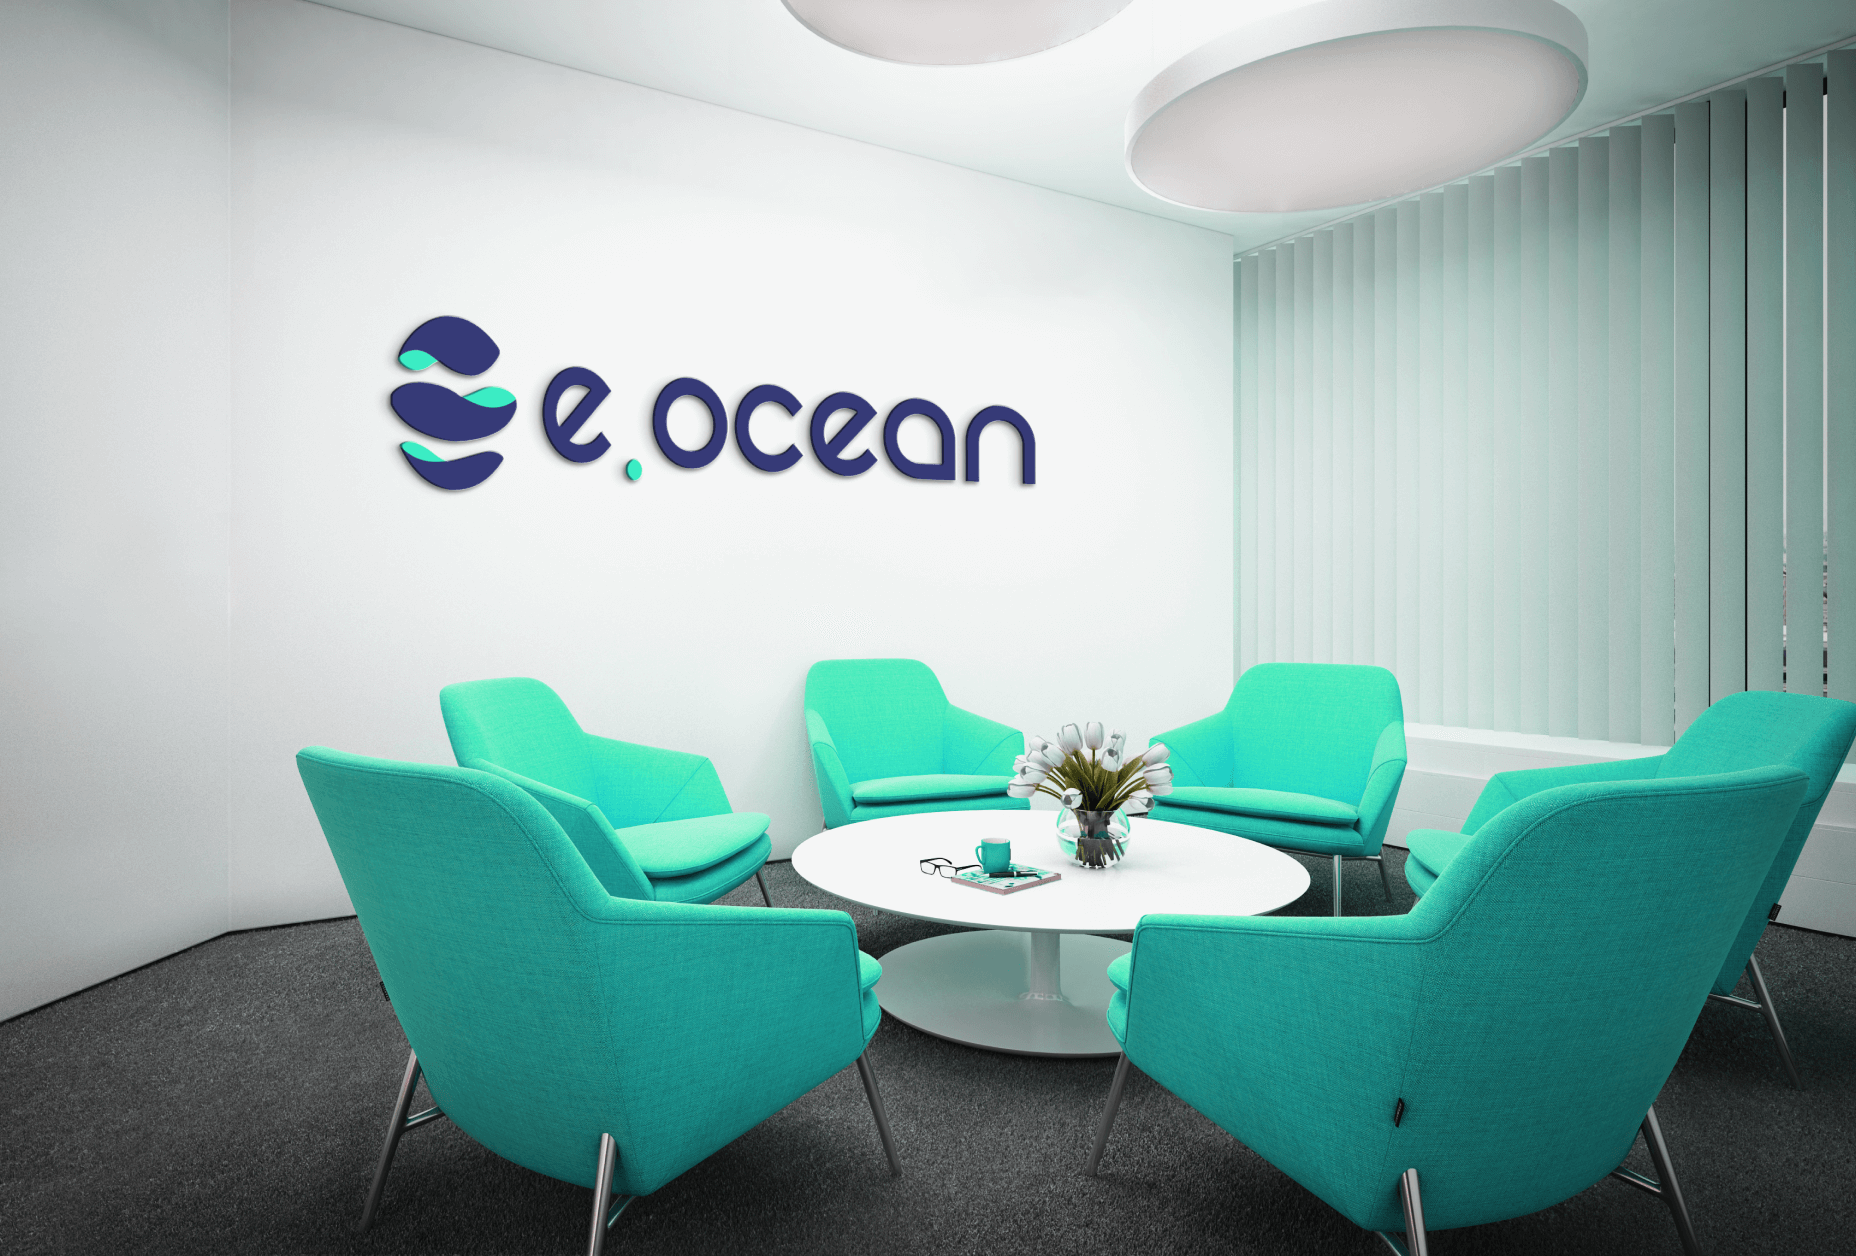 e.ocean